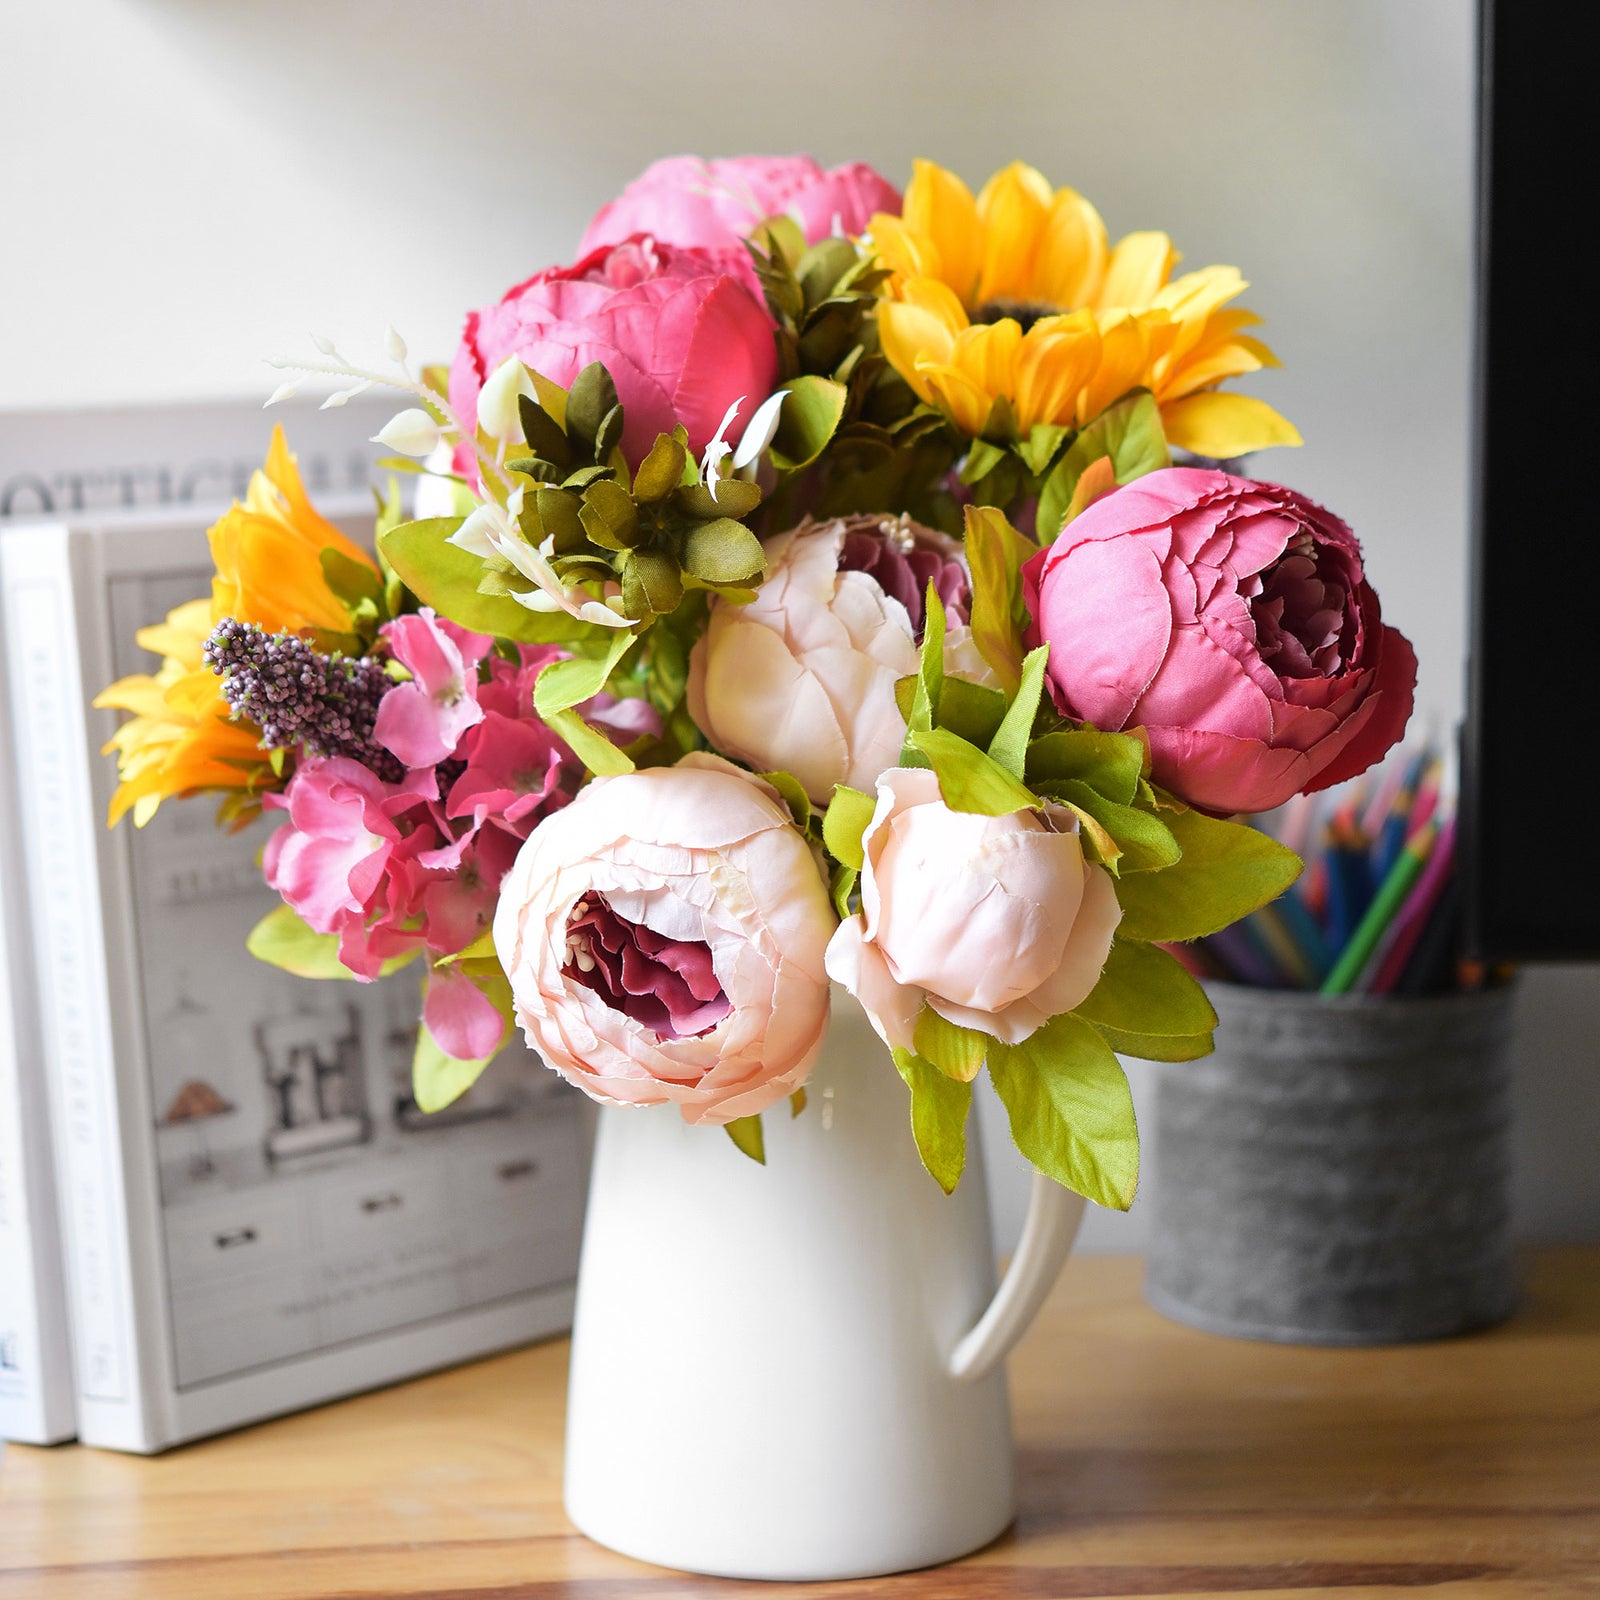 Silk Pink Peonies and Sunflowers Mix Flower Bouquet Artificial Flowers, FiveSeasonStuff Floral